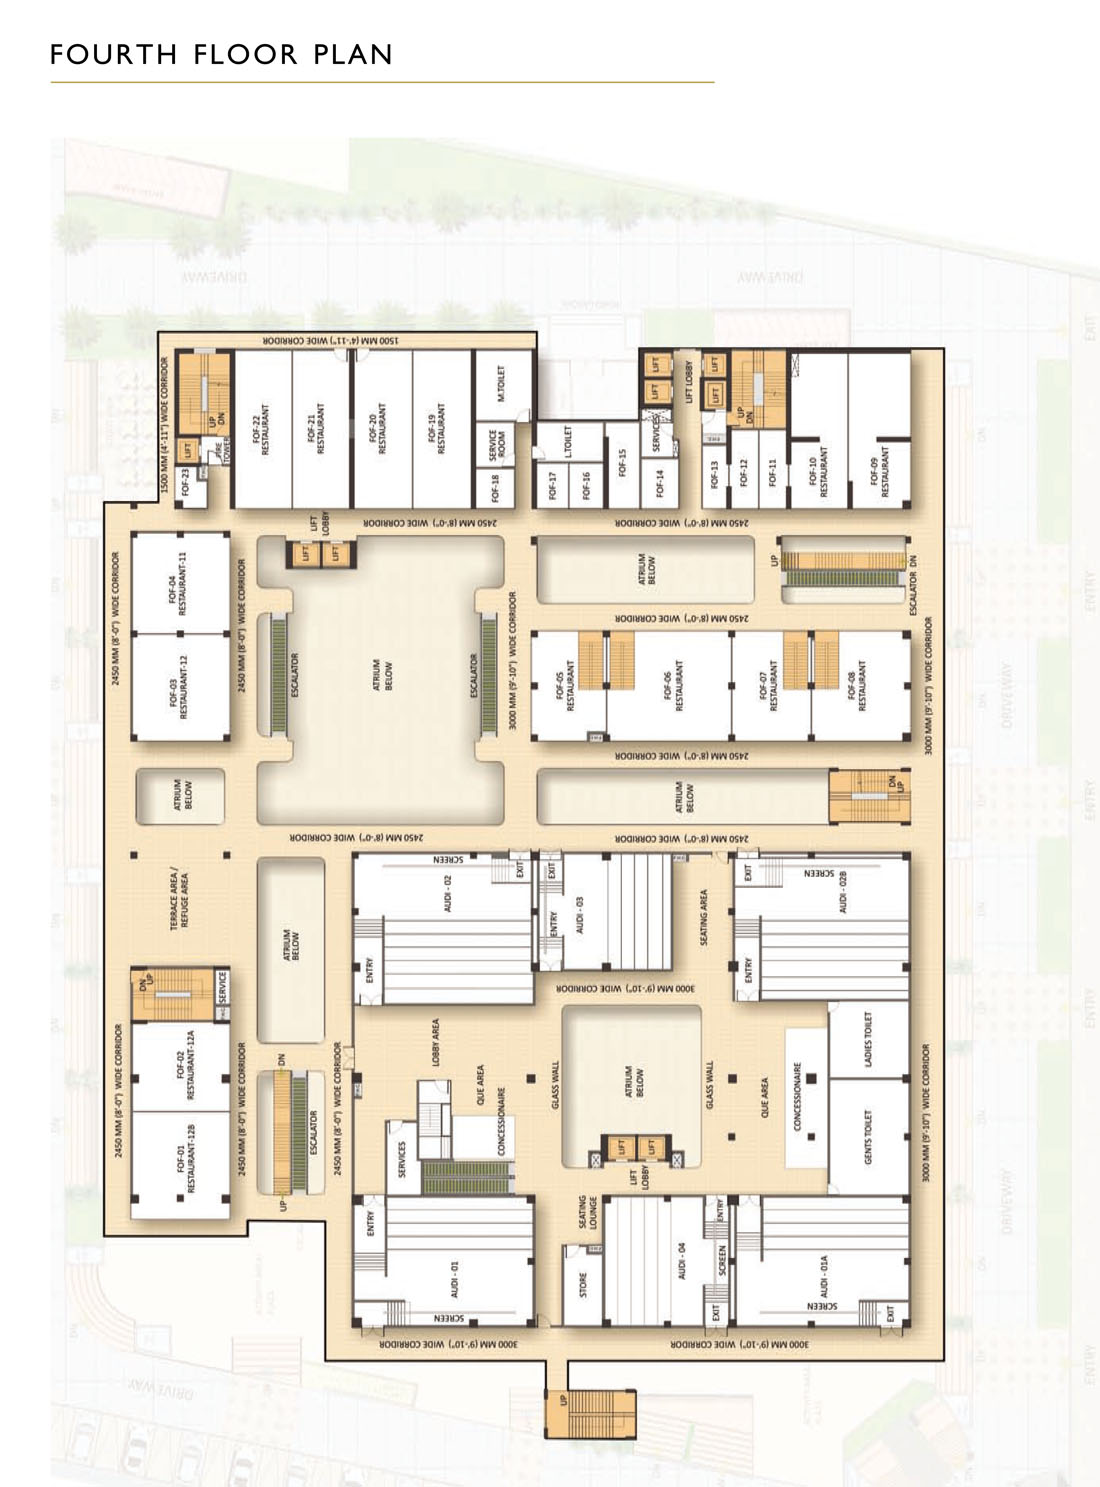 Fourth Floor Plan | Multiplex / Restaurants